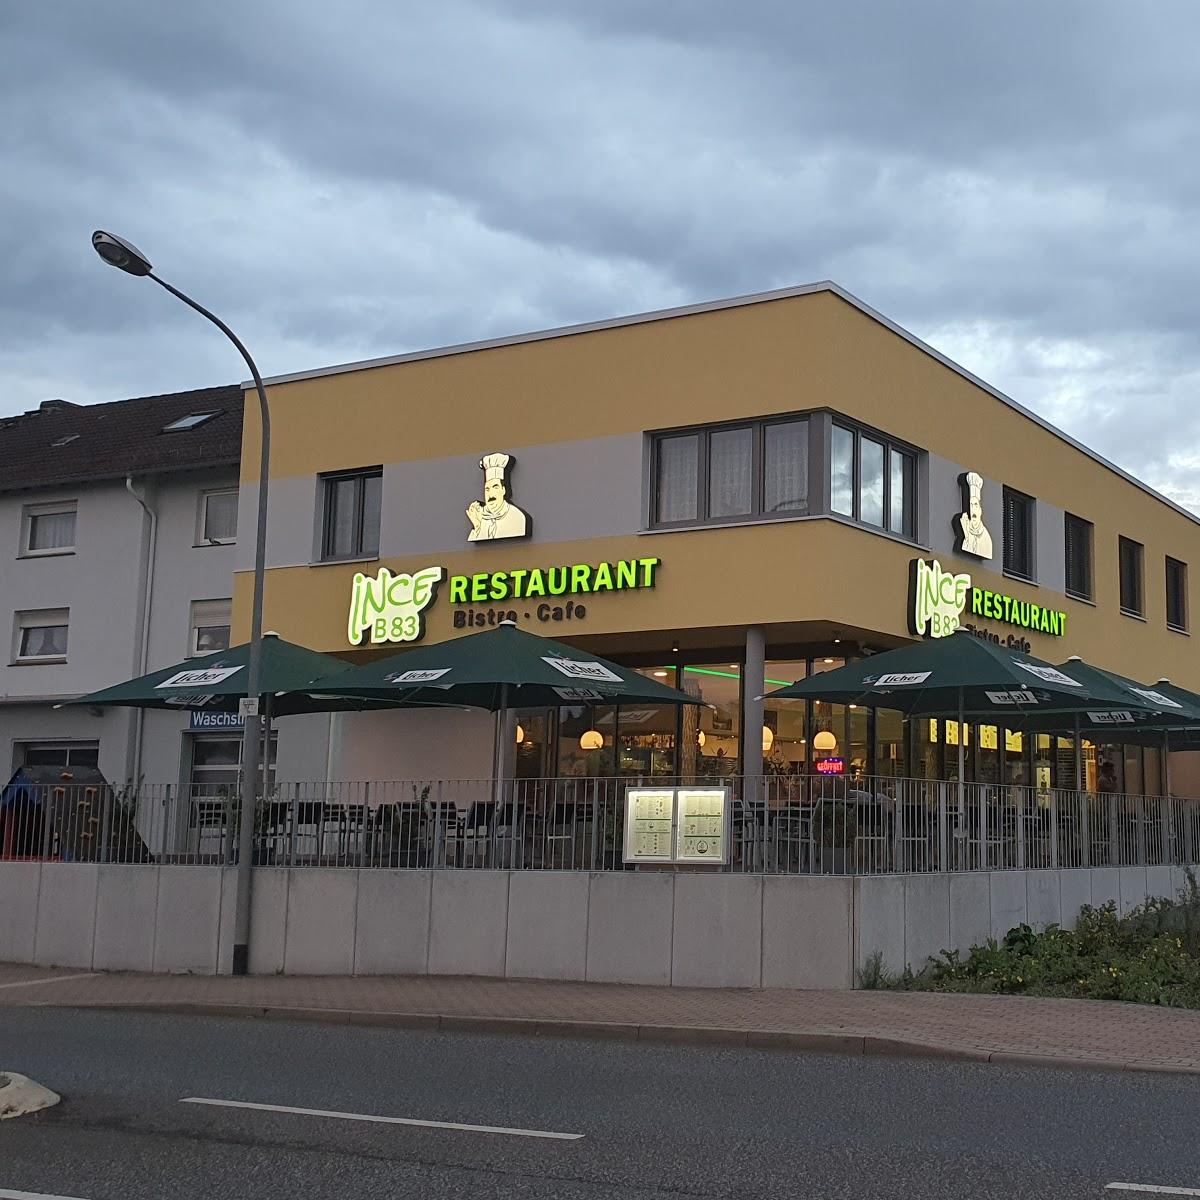 Restaurant "Ince B83 Restaurant" in Melsungen